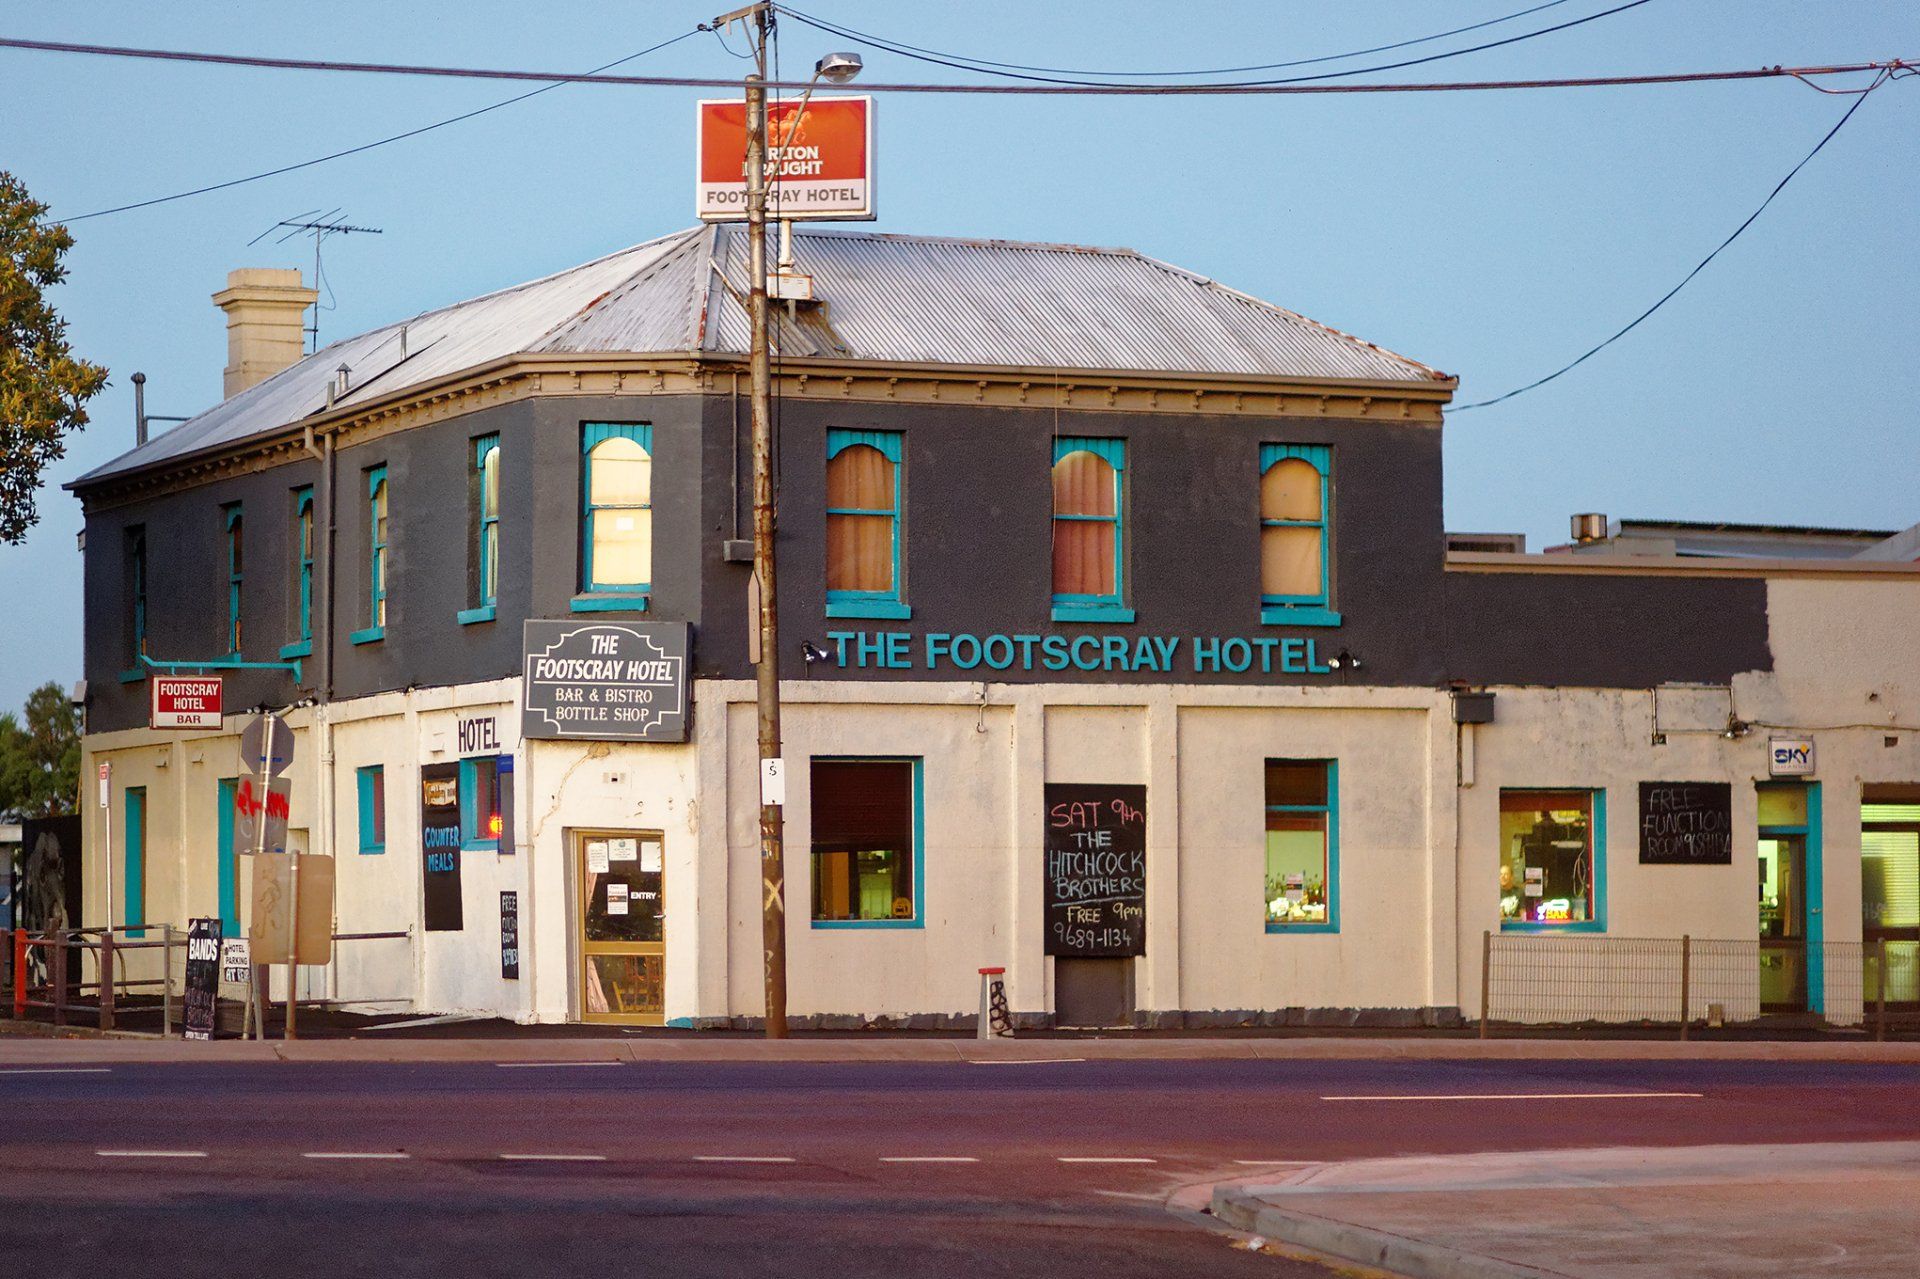 The Footscray Hotel